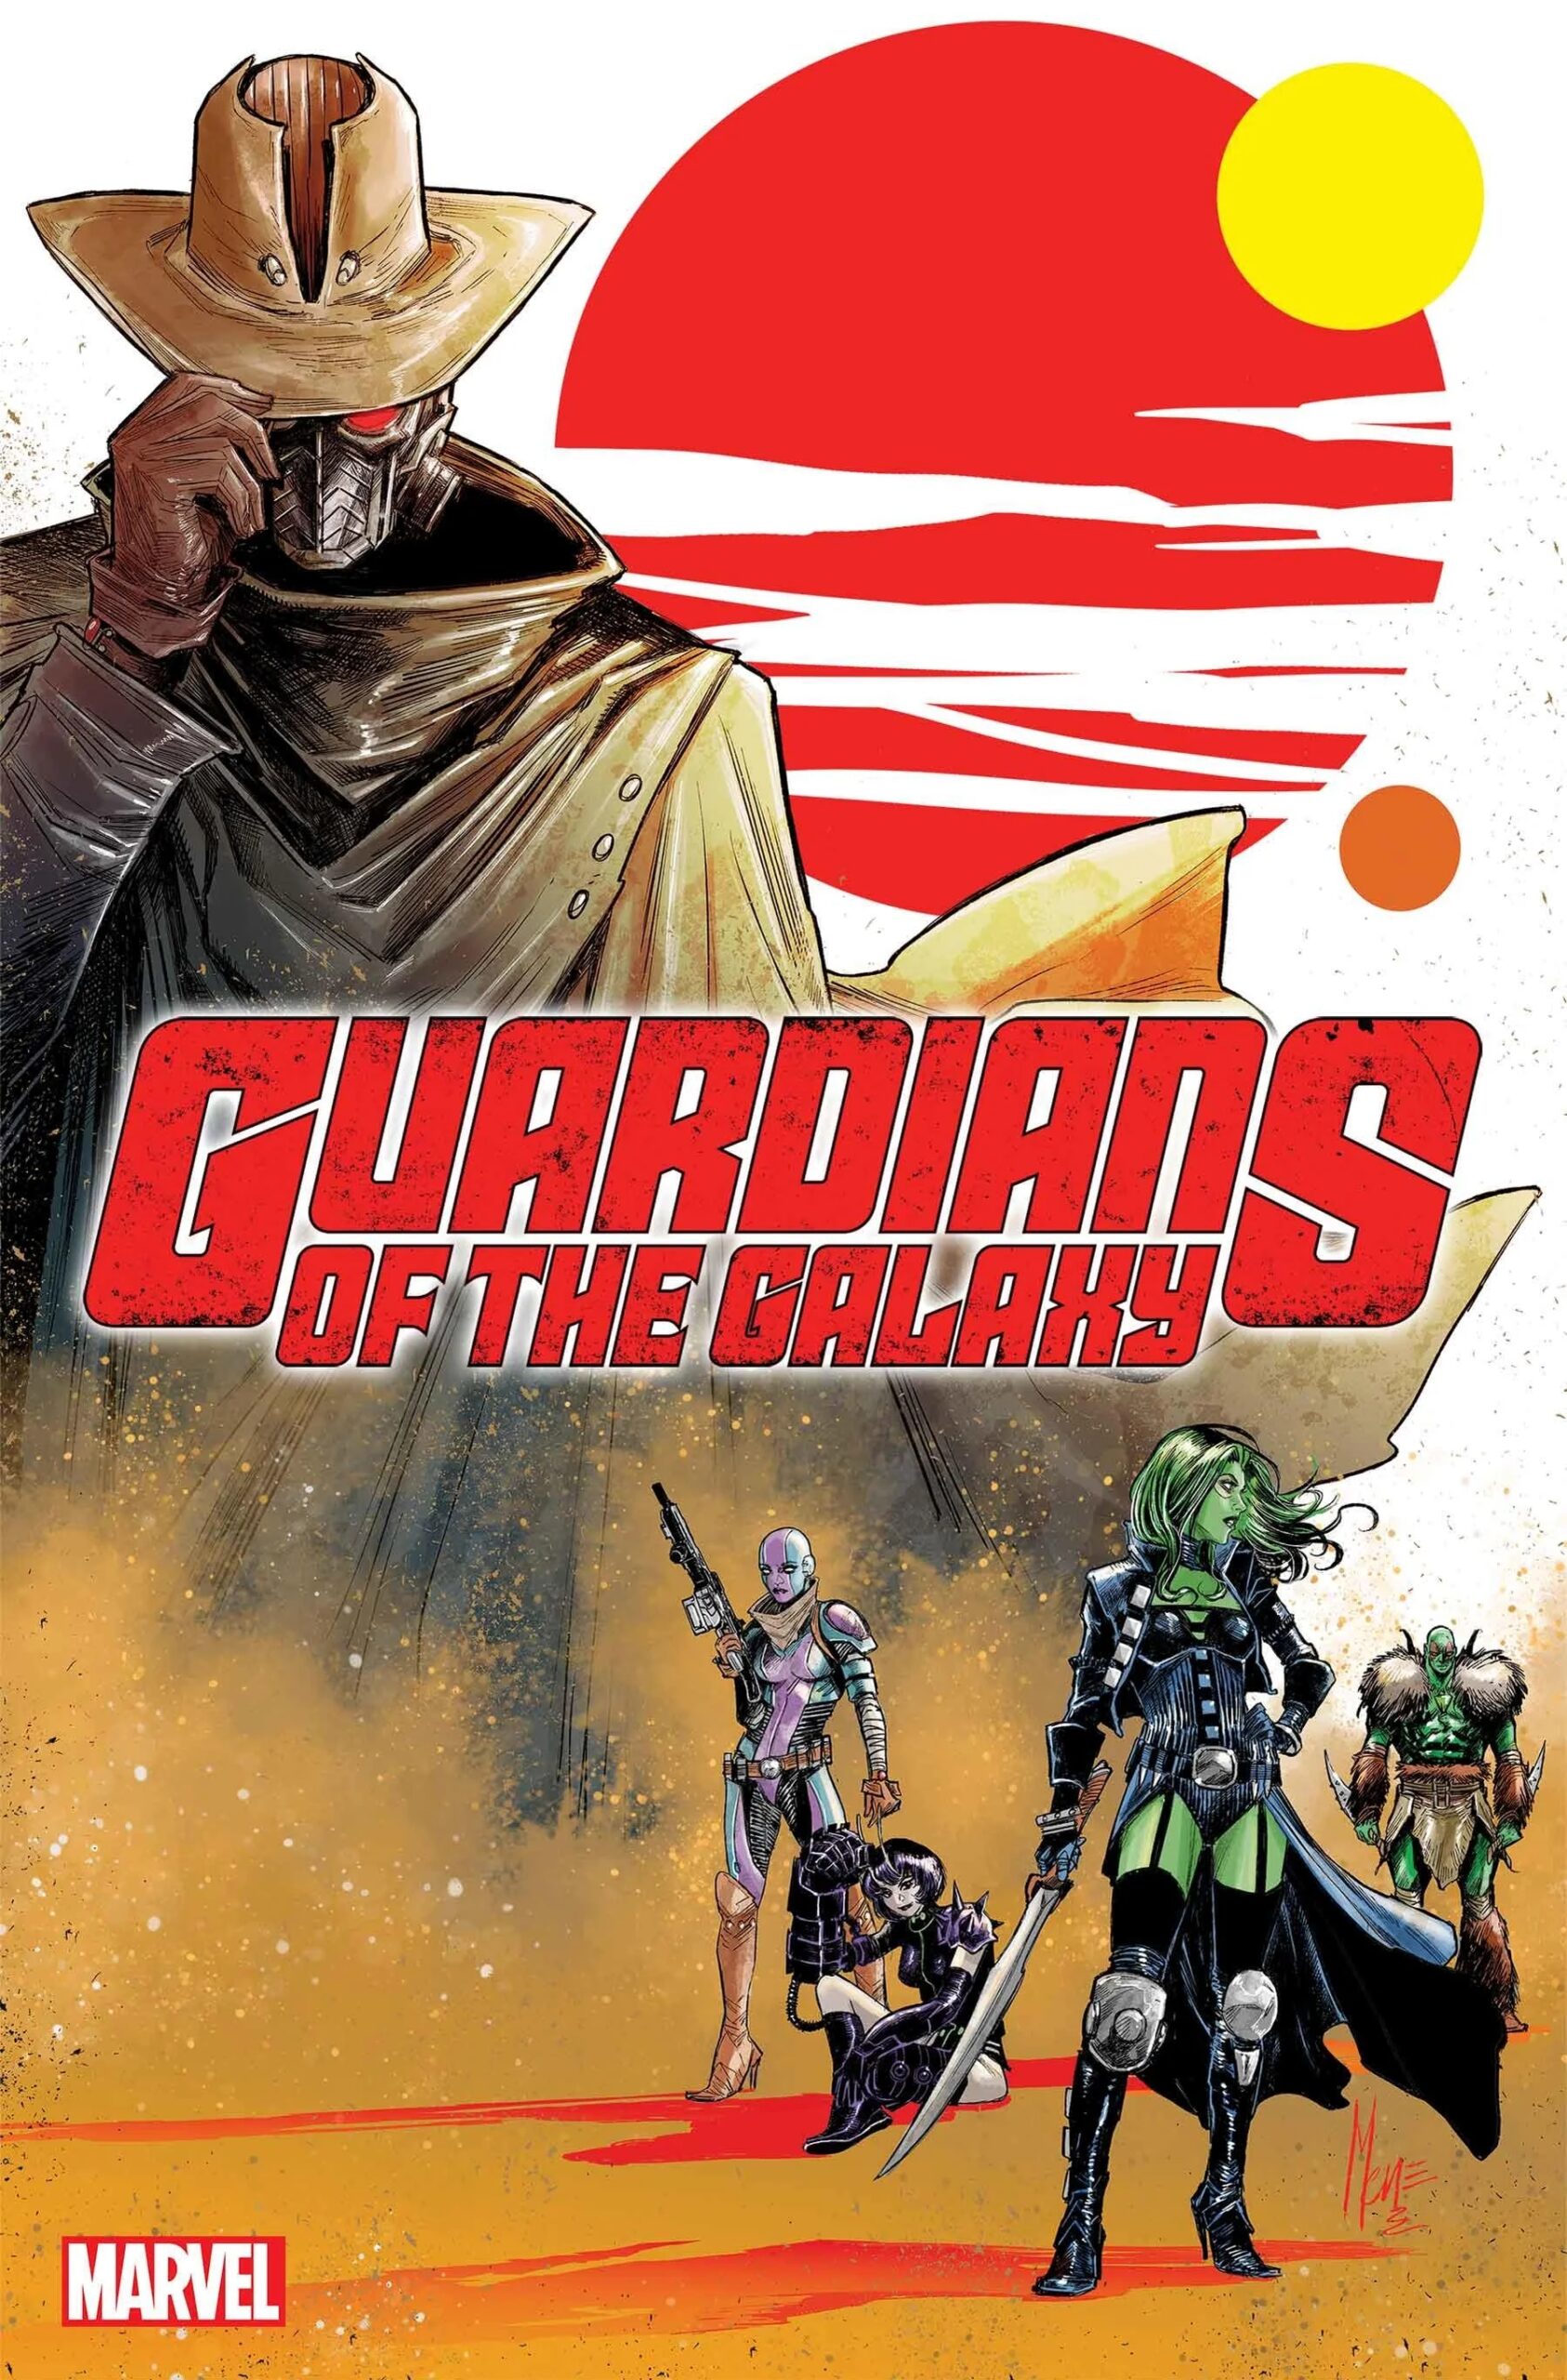 Marvel revela novo visual do Senhor das Estrelas nos quadrinhos